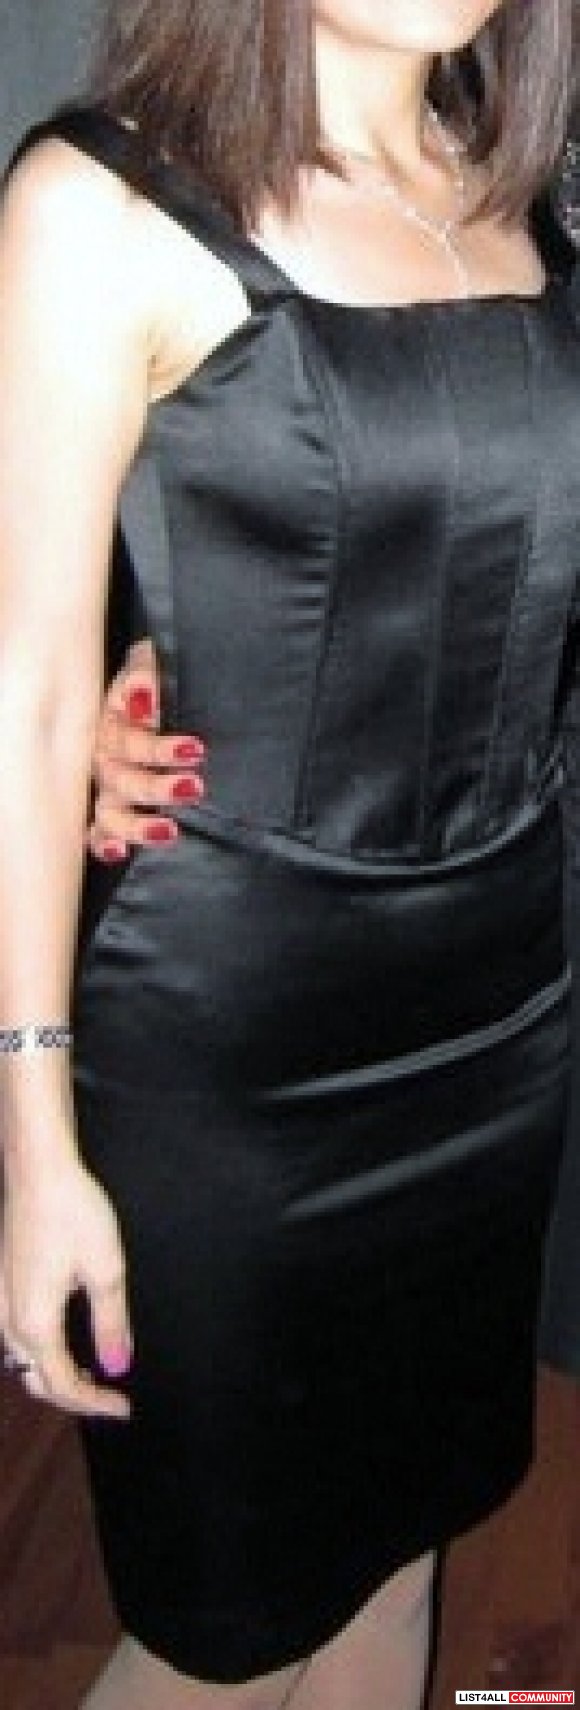 Marciano little black dress